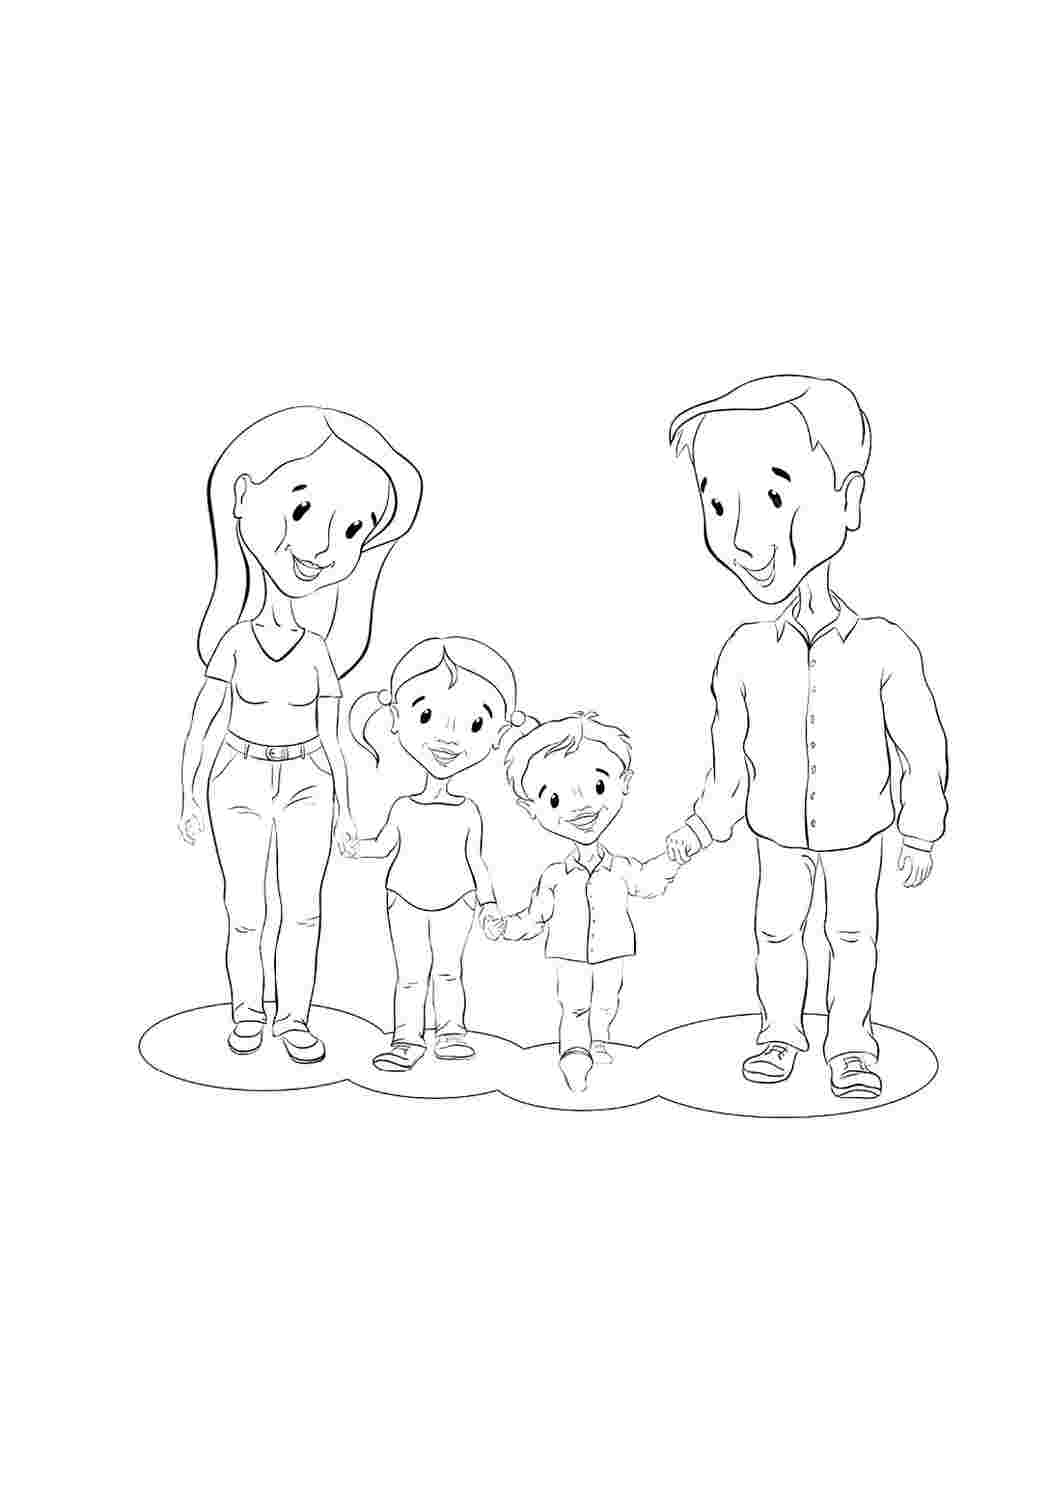 Сезонный натюрморт. Как рисовать в семейном формате (мама+малыш)